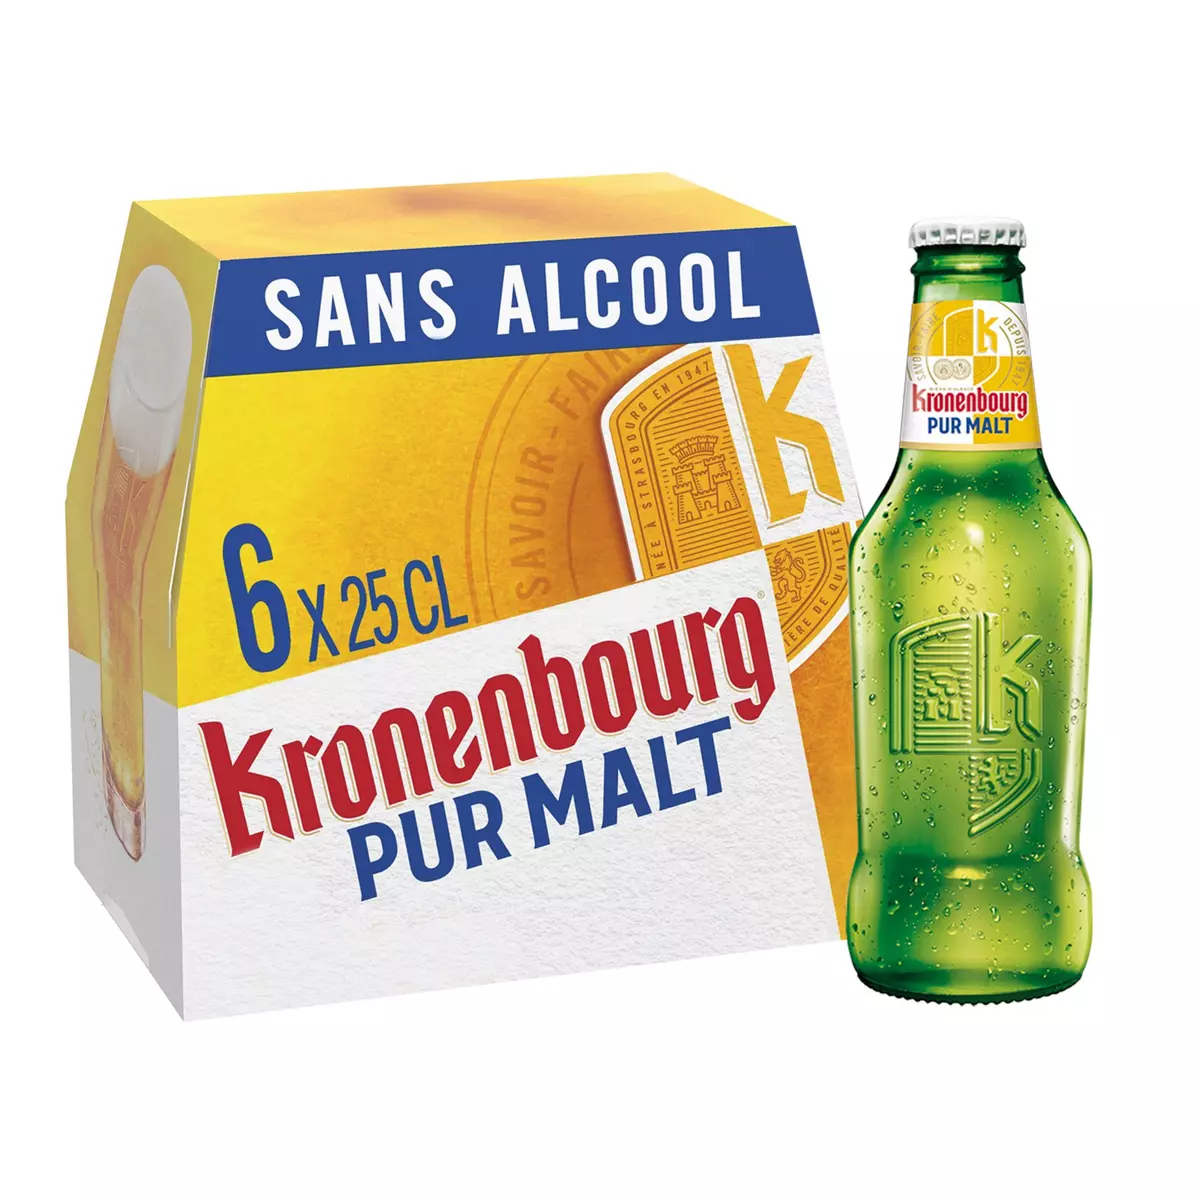 KRONENBOURG Bière blonde pur malt sans alcool bouteille 6x25cl